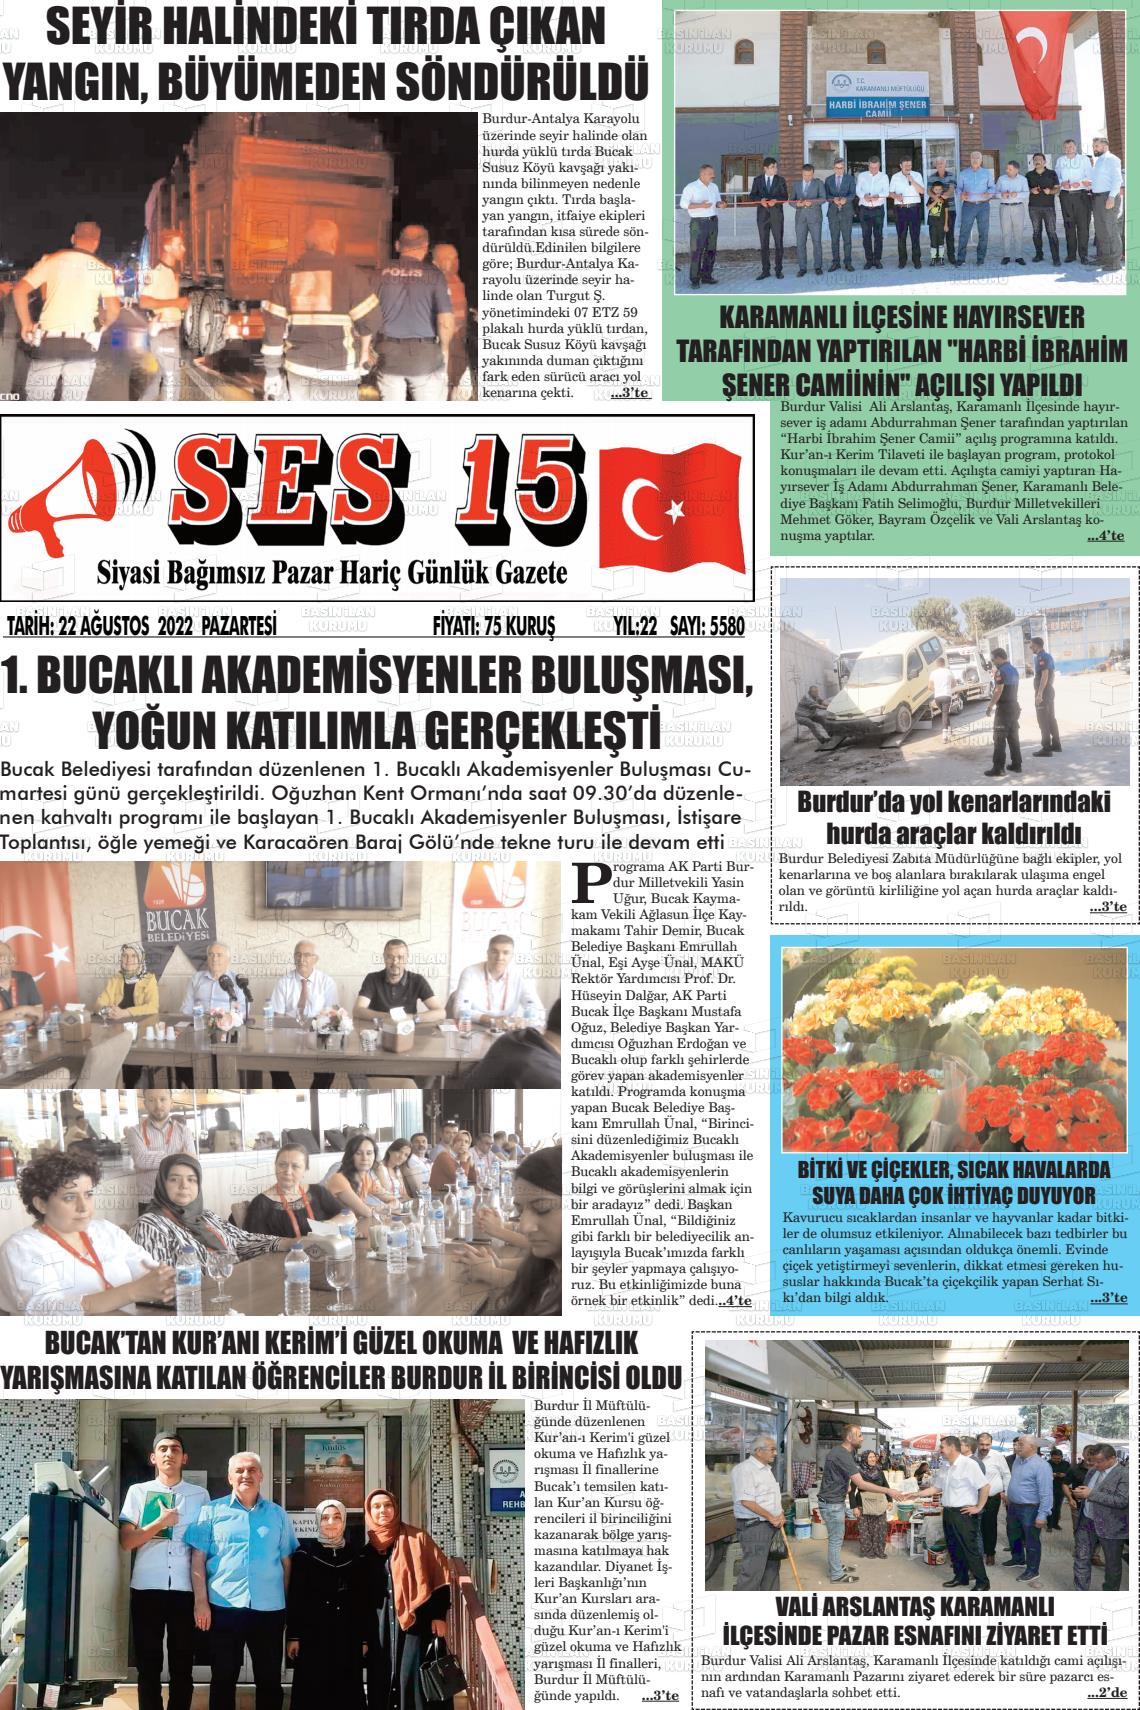 22 Ağustos 2022 Ses 15 Gazete Manşeti